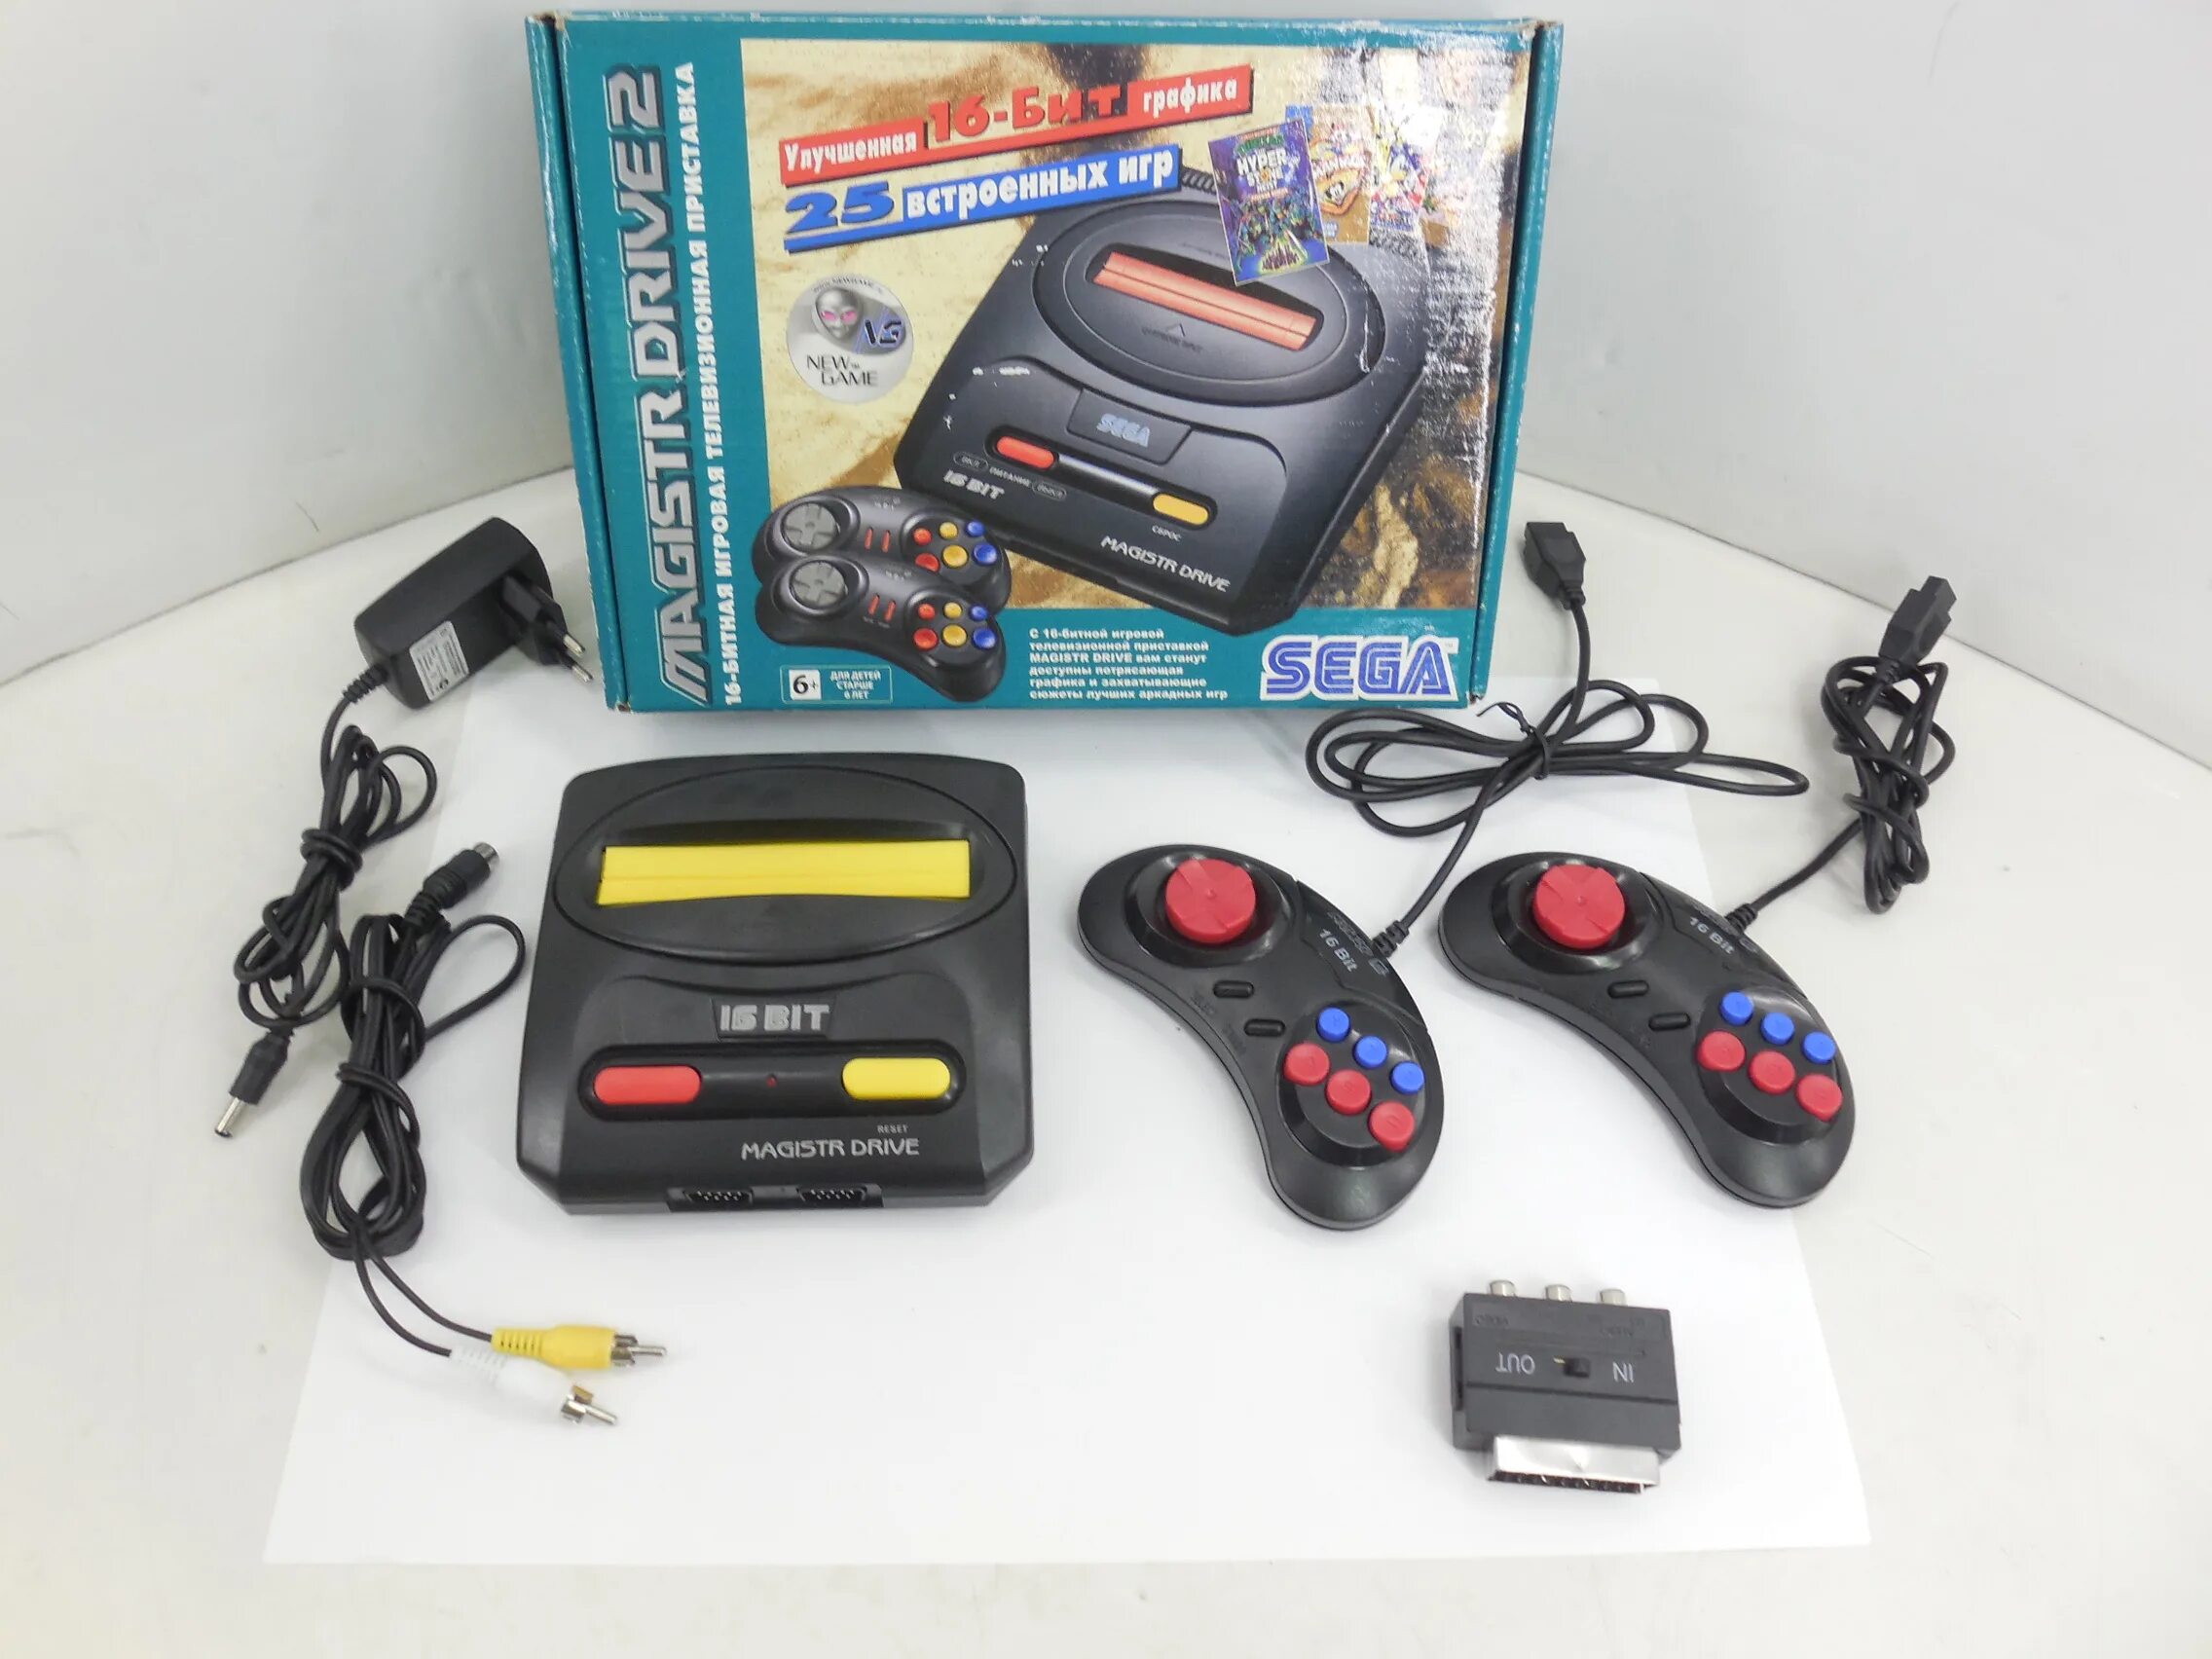 Сега Магистр драйв 2. Приставка Mega Drive 2. Sega Magistr Drive 2 25 встроенных игр. Сега Магистр драйв 1. Игры magistr drive